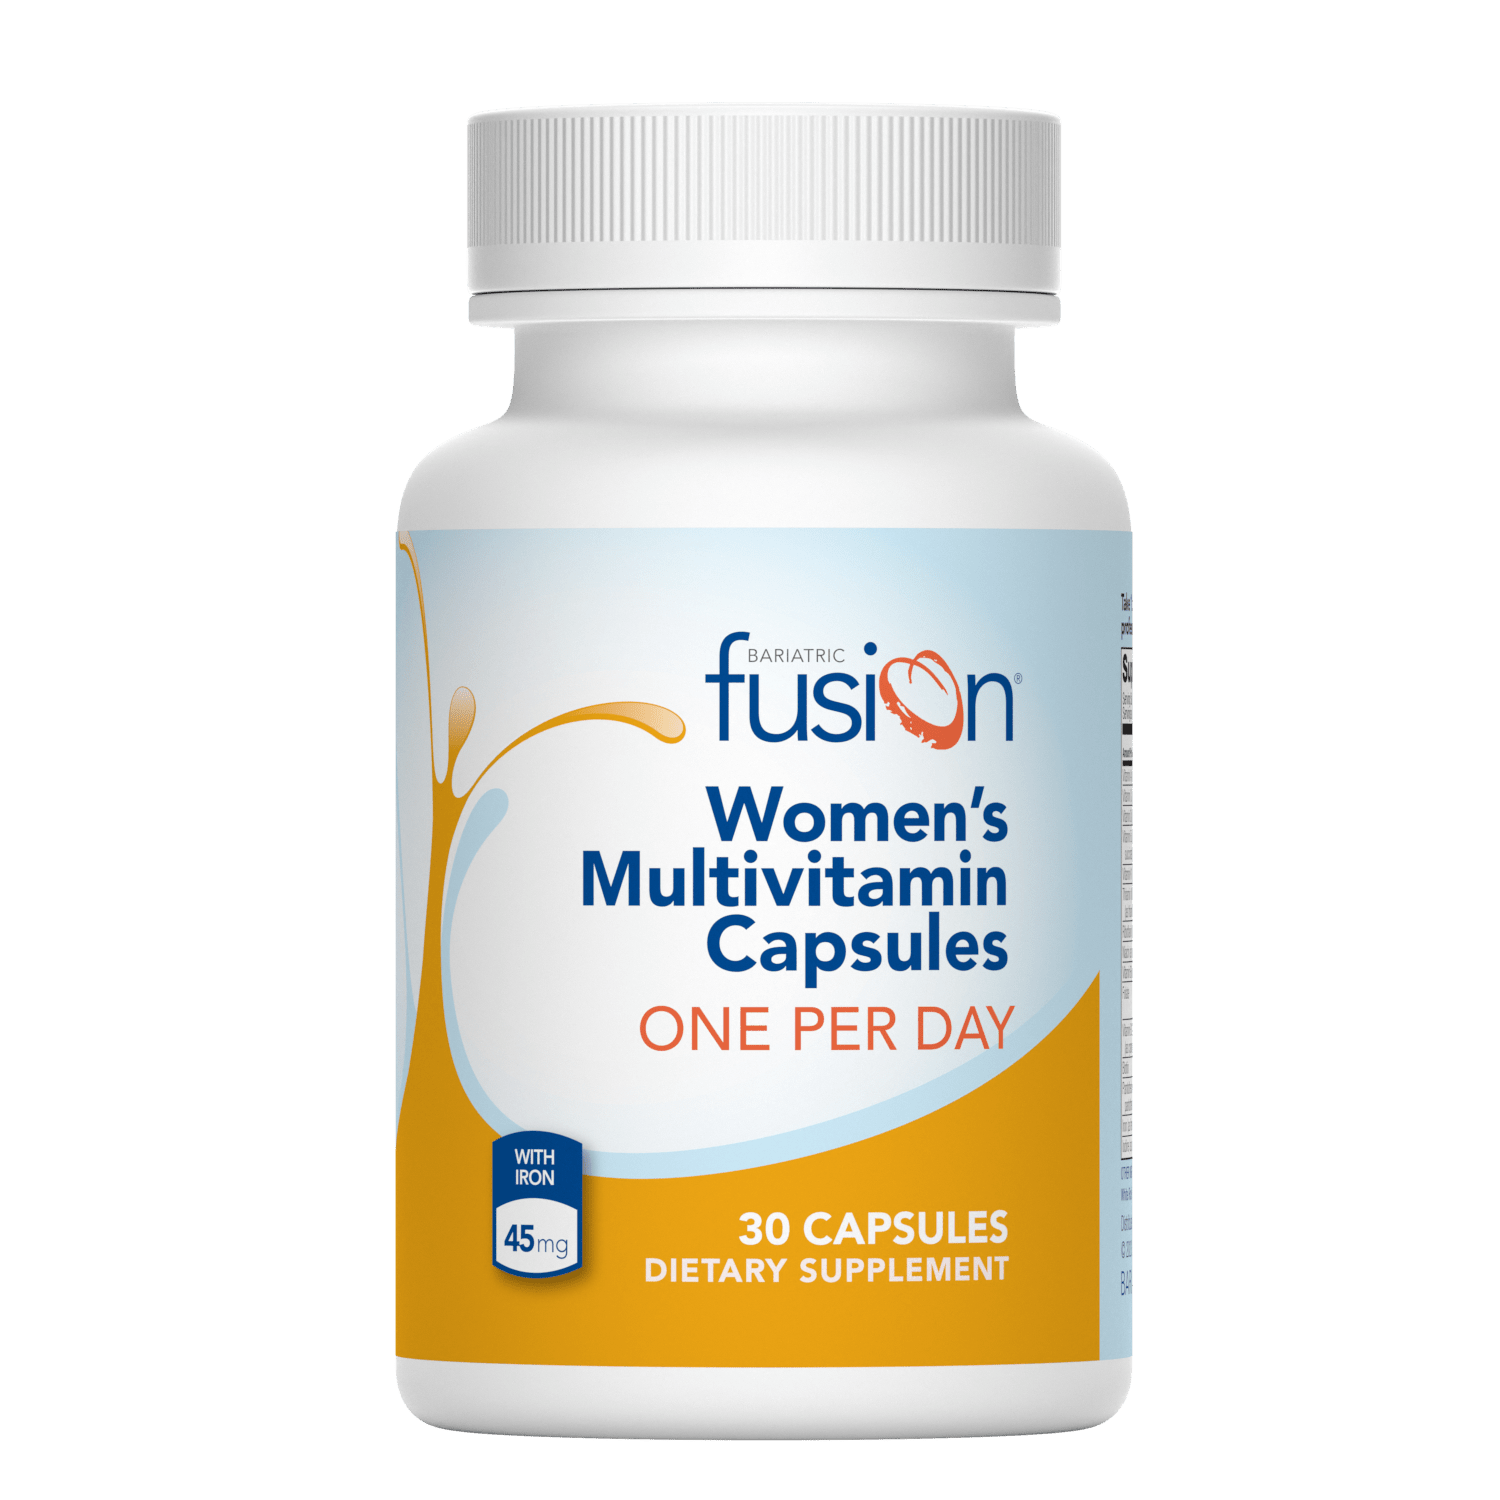 Women’s One Per Day Multivitamin Capsules - Bariatric Fusion